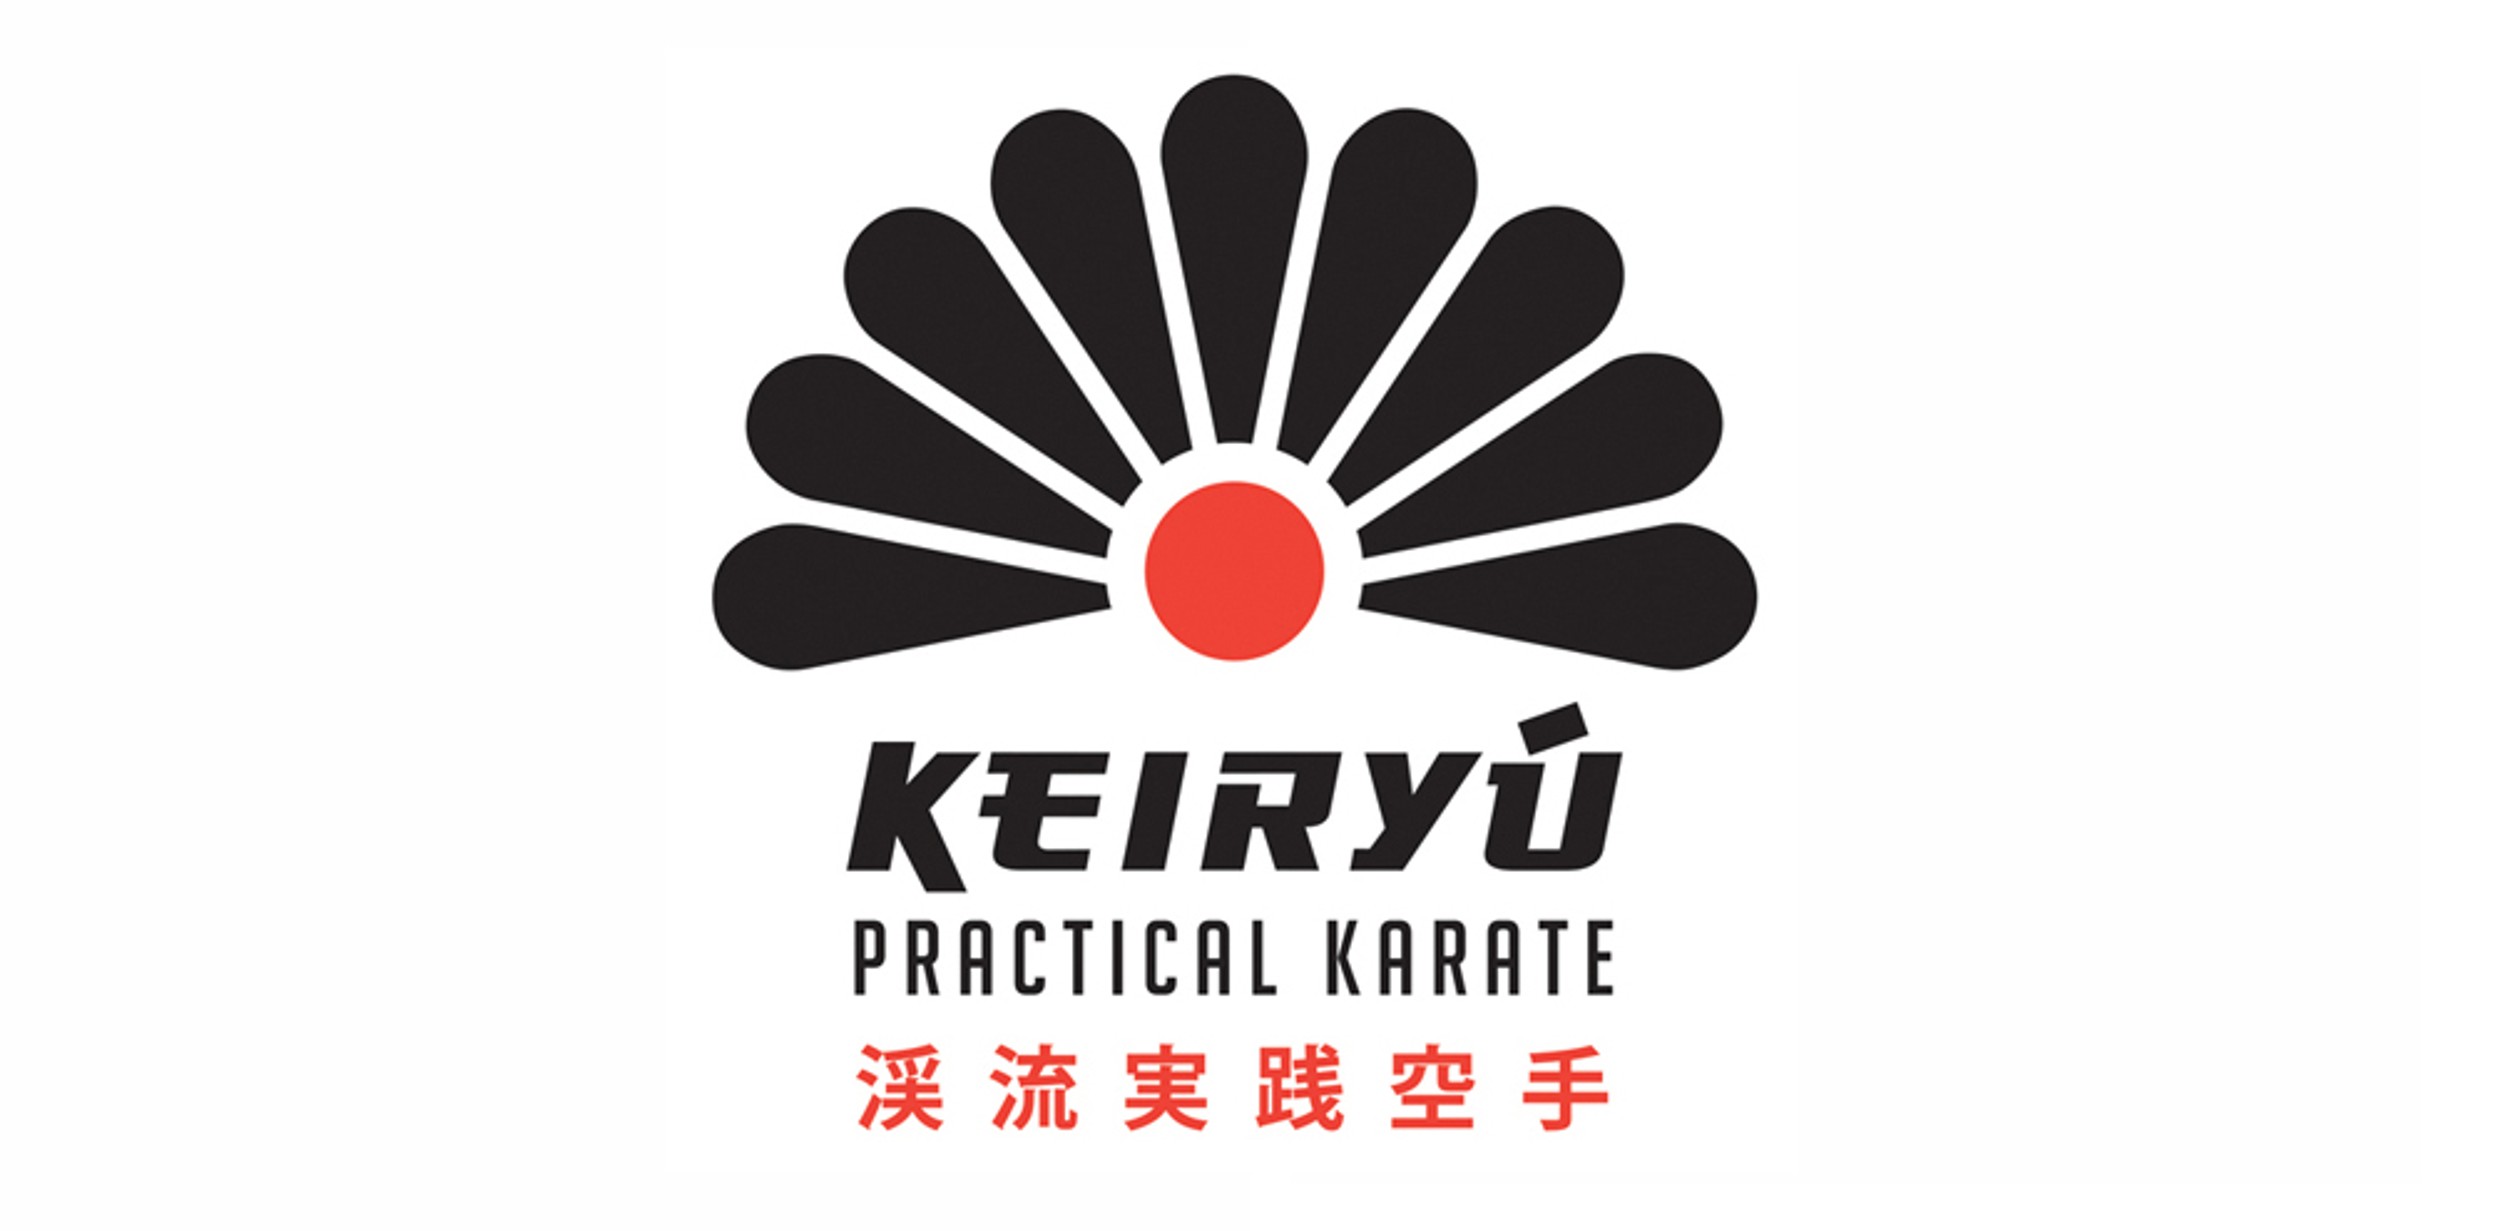 Keiryu Practical Karate - Martial Arts Classes in Heybridge